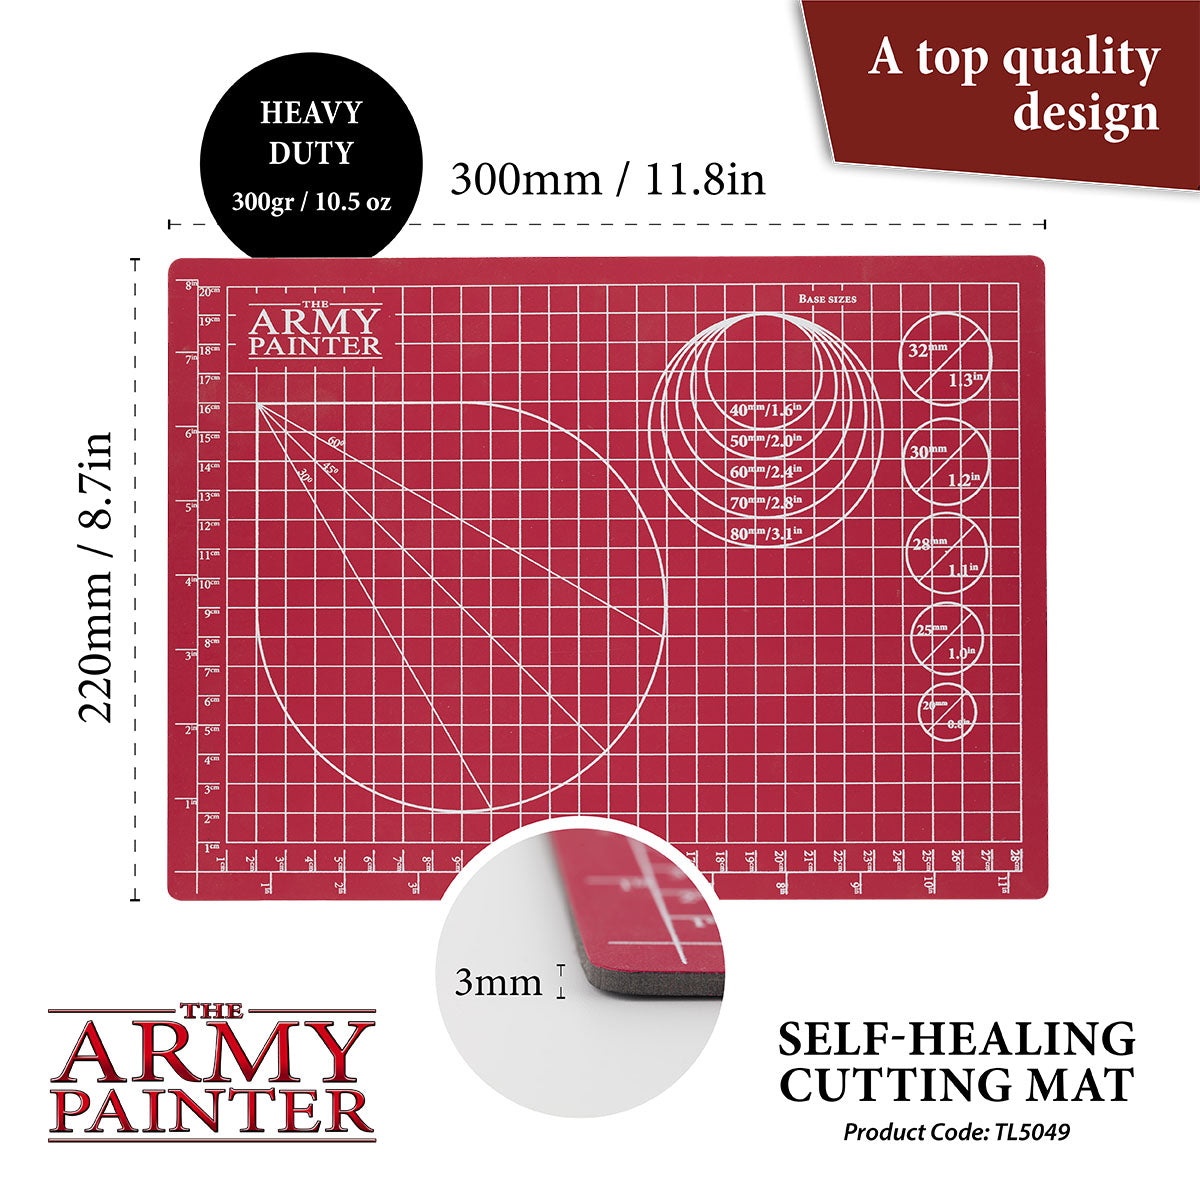 A2 Cutting Mat (self-healing) - Ratchford Limited